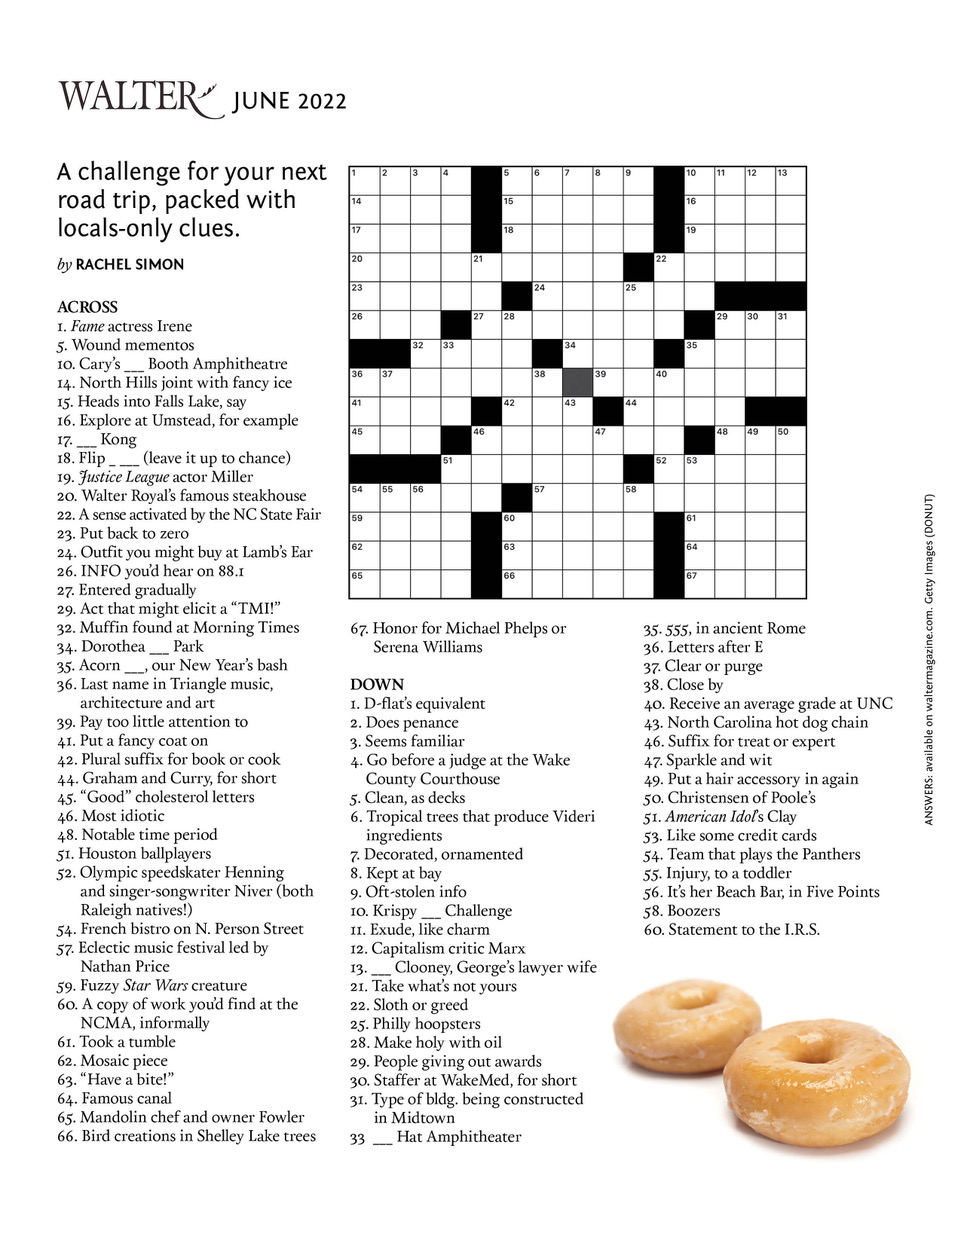 Culture crossword puzzle